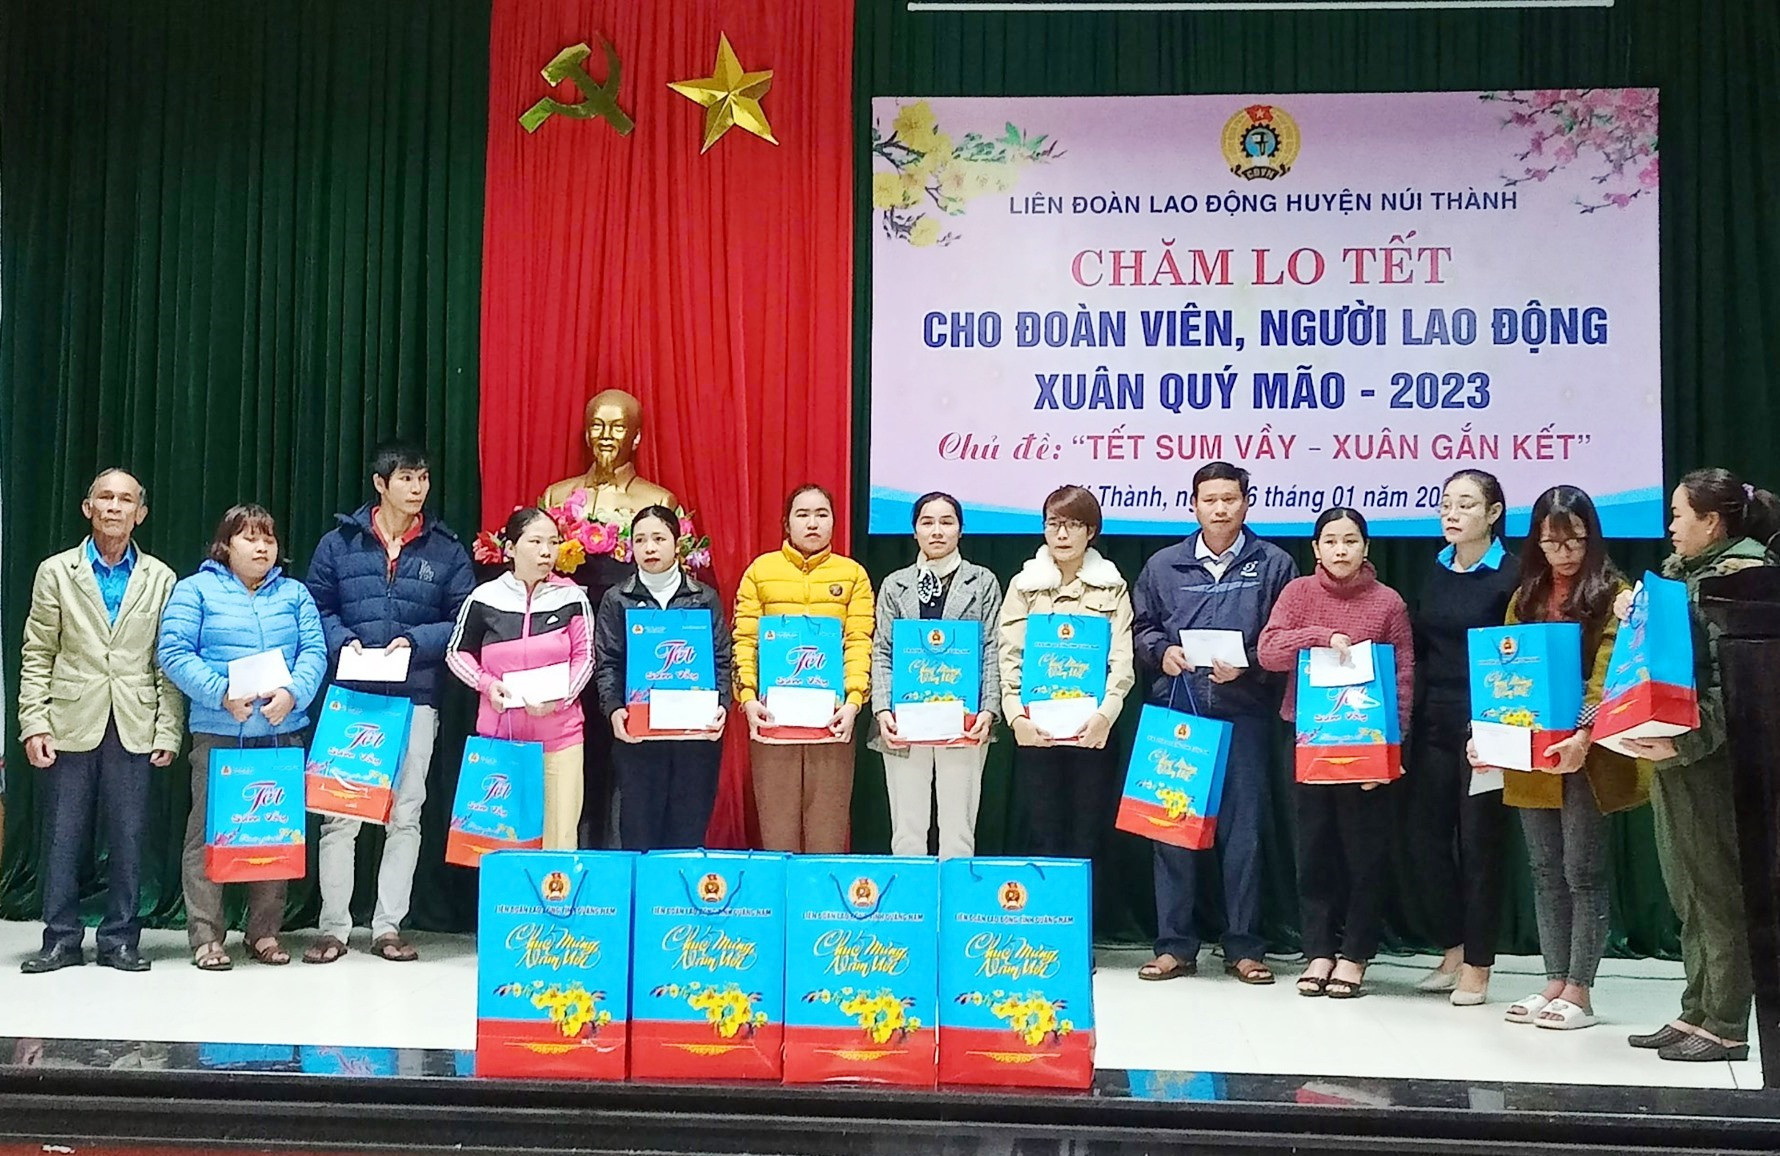 Liên đoàn Lao động huyện Núi Thành tổ chức chương trình “Tết sum vầy - Xuân gắn kết”, trao 190 suất quà tết cho đoàn viên, người lao động